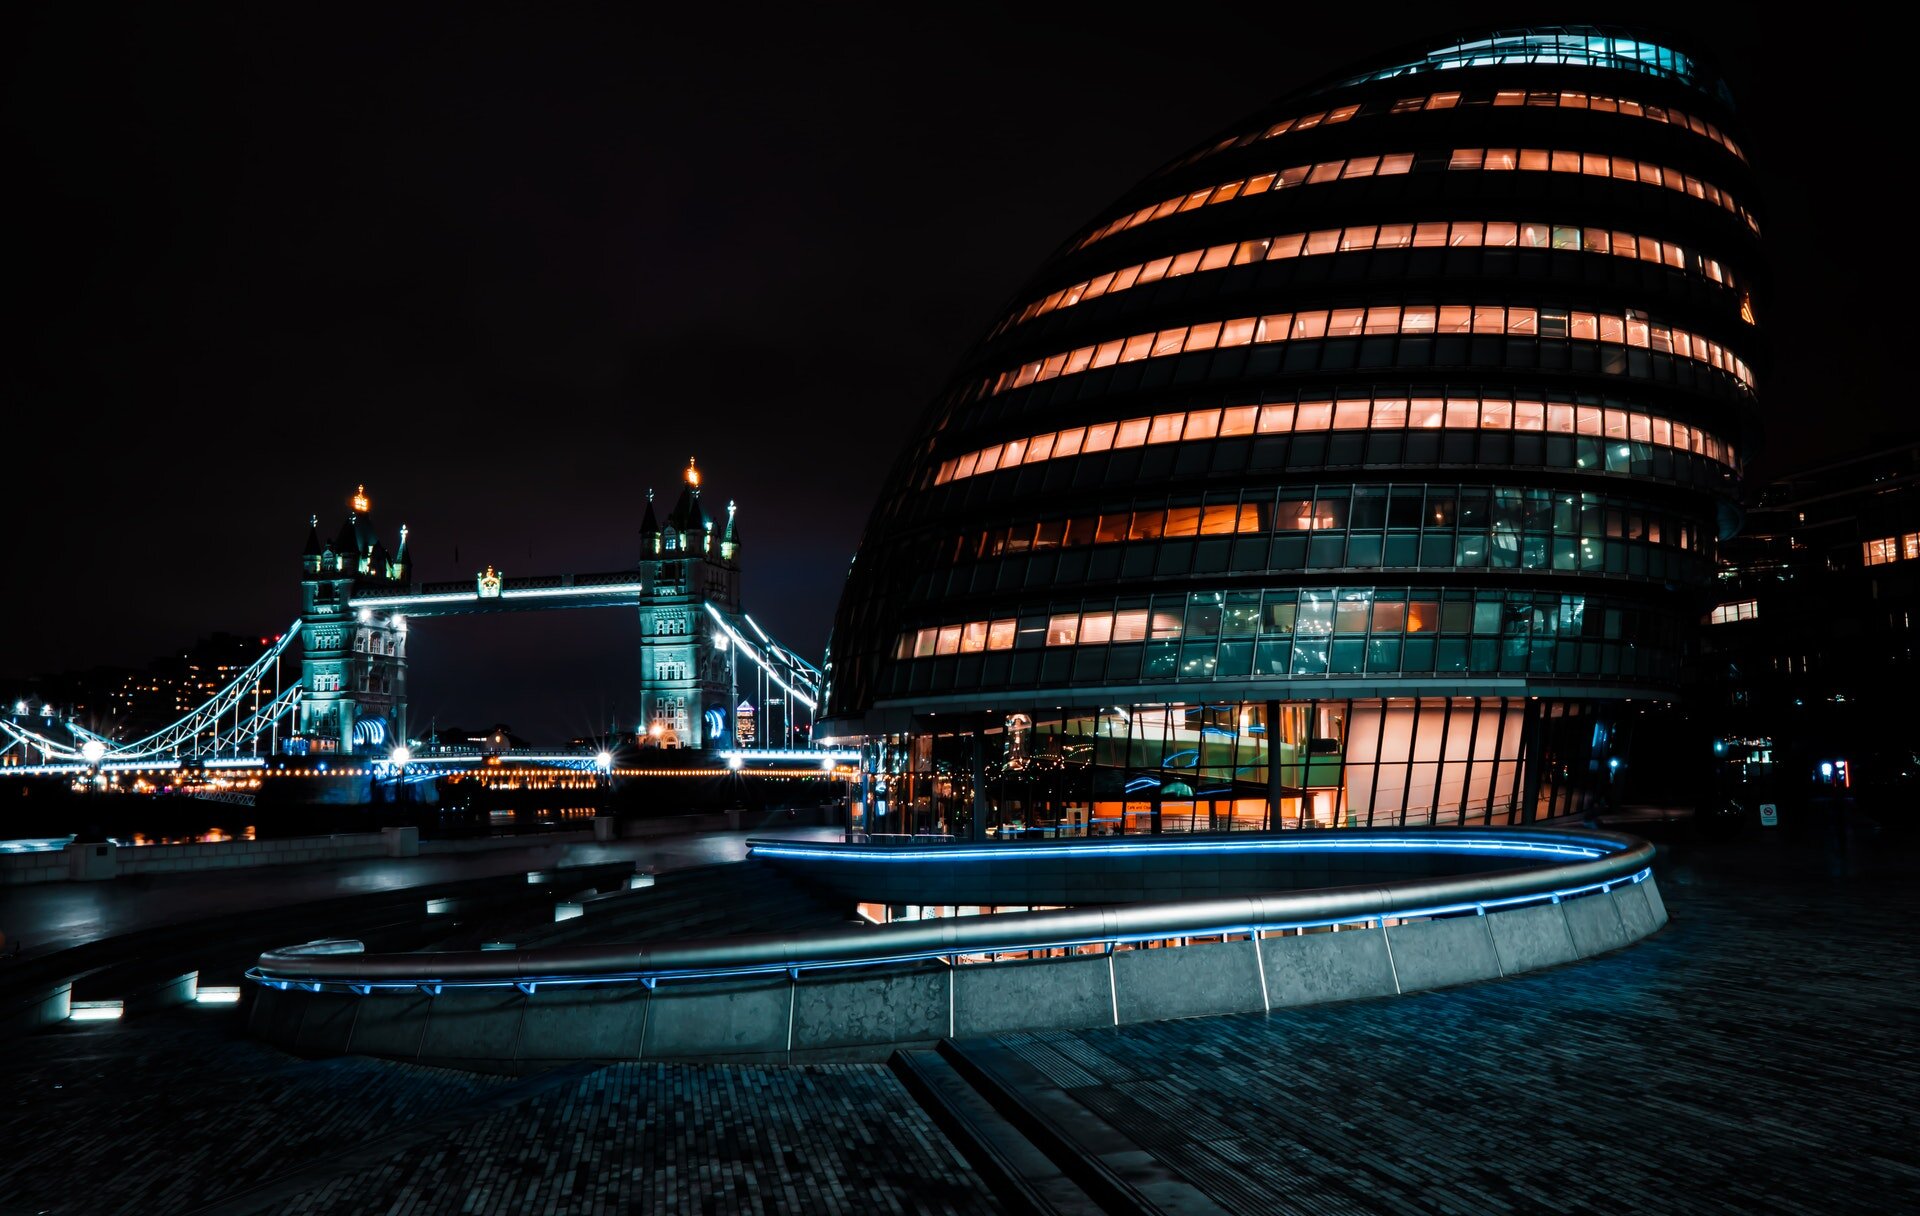 Fotografia przedstawia Londyn nocą. Na pierwszym planie po prawej stronie zdjęcia znajduje się City Hall. Budynek ma owalny, jajowaty kształt. Posiada kilka pięter, na każdym z nich widnieje szereg oświetlonych okien. W tle znajduje się wysoki, oświetlony most z dwoma wieżami połączonymi ze sobą. 